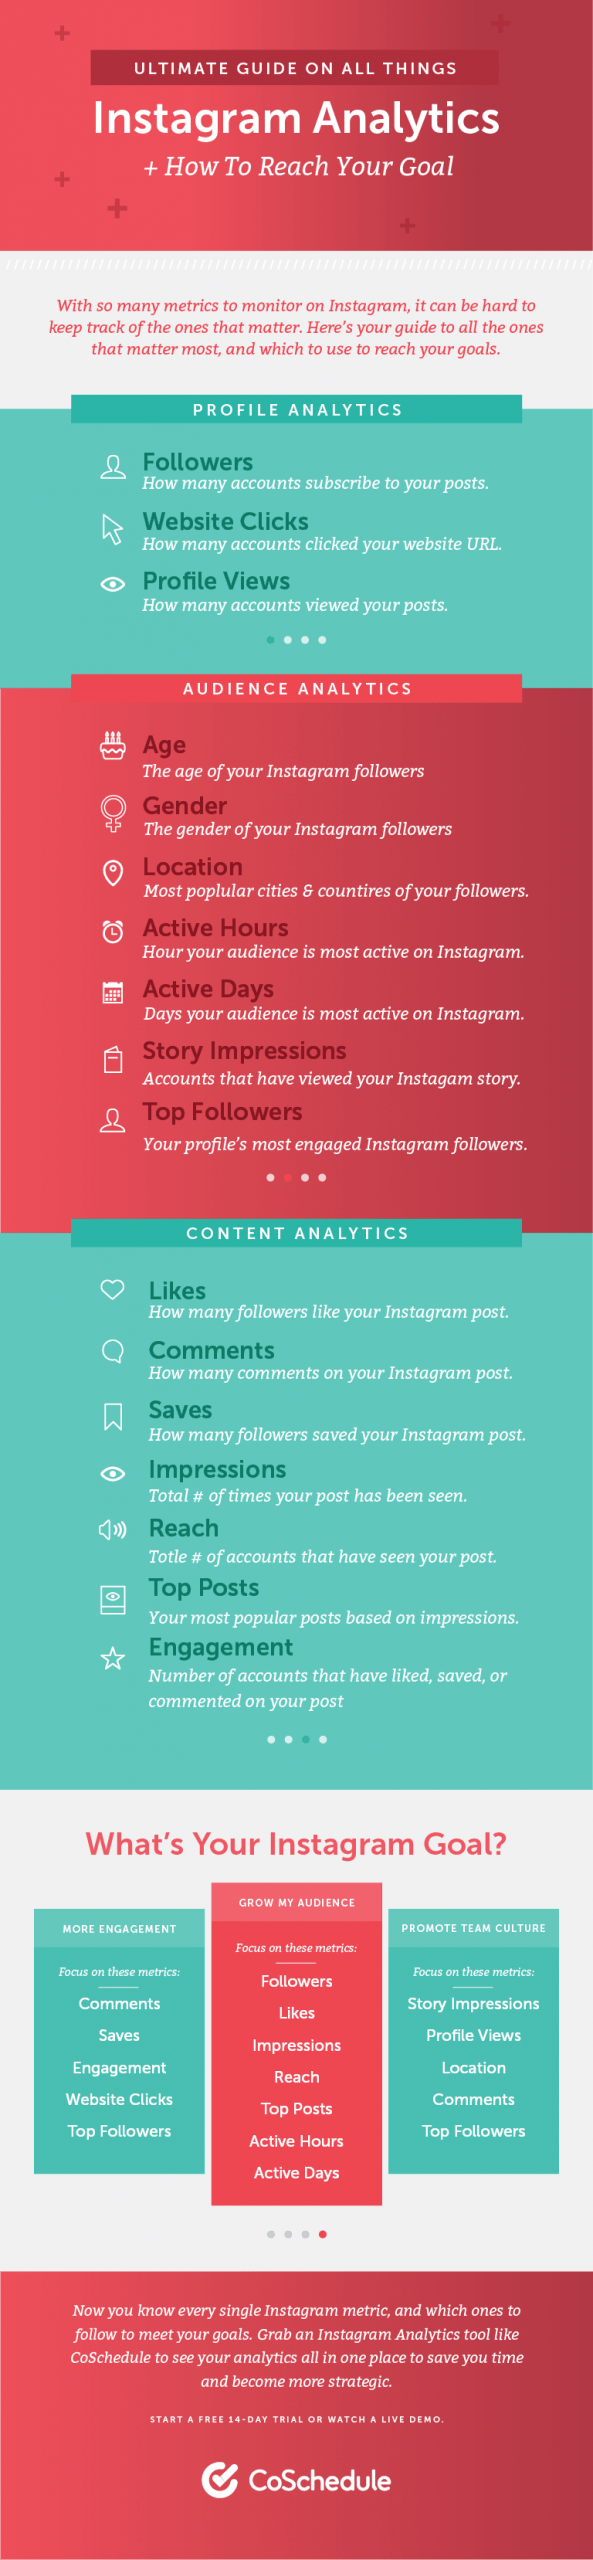 instagram-full-analytics-guide